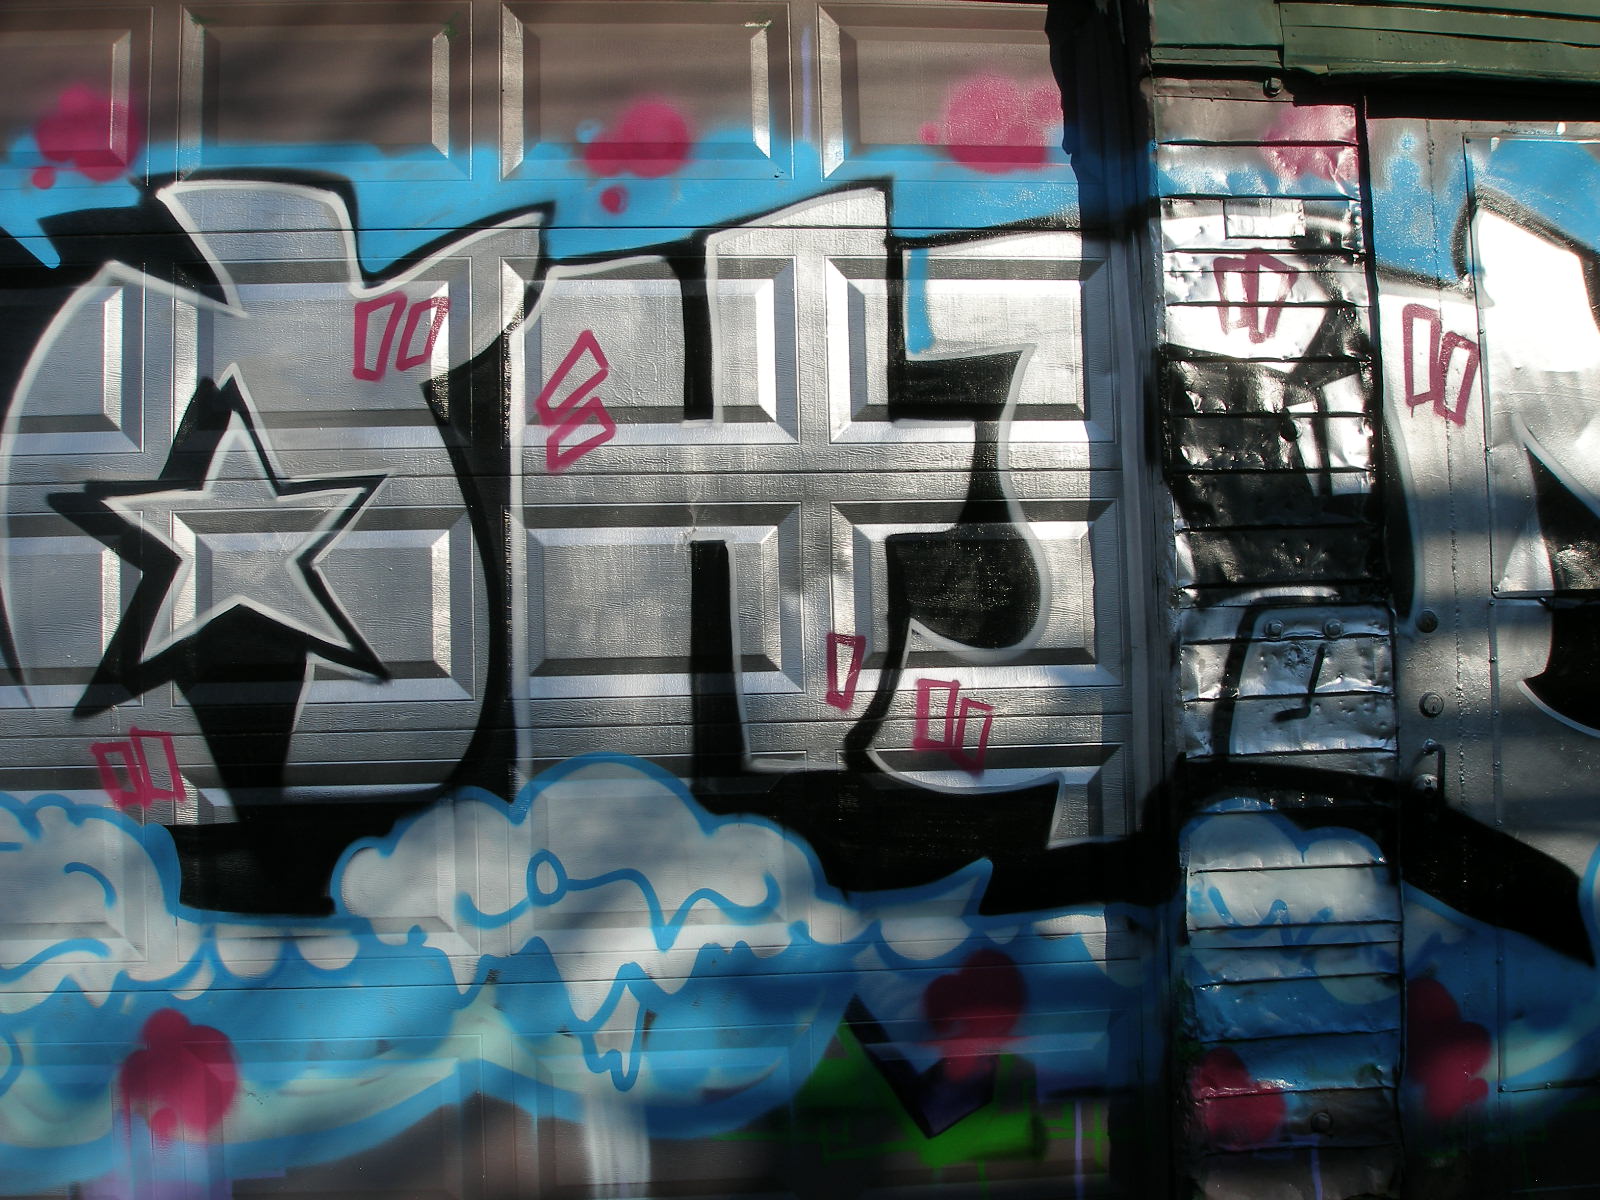 Columbia Spy Vandals Spray Paint Graffiti On Garage Door